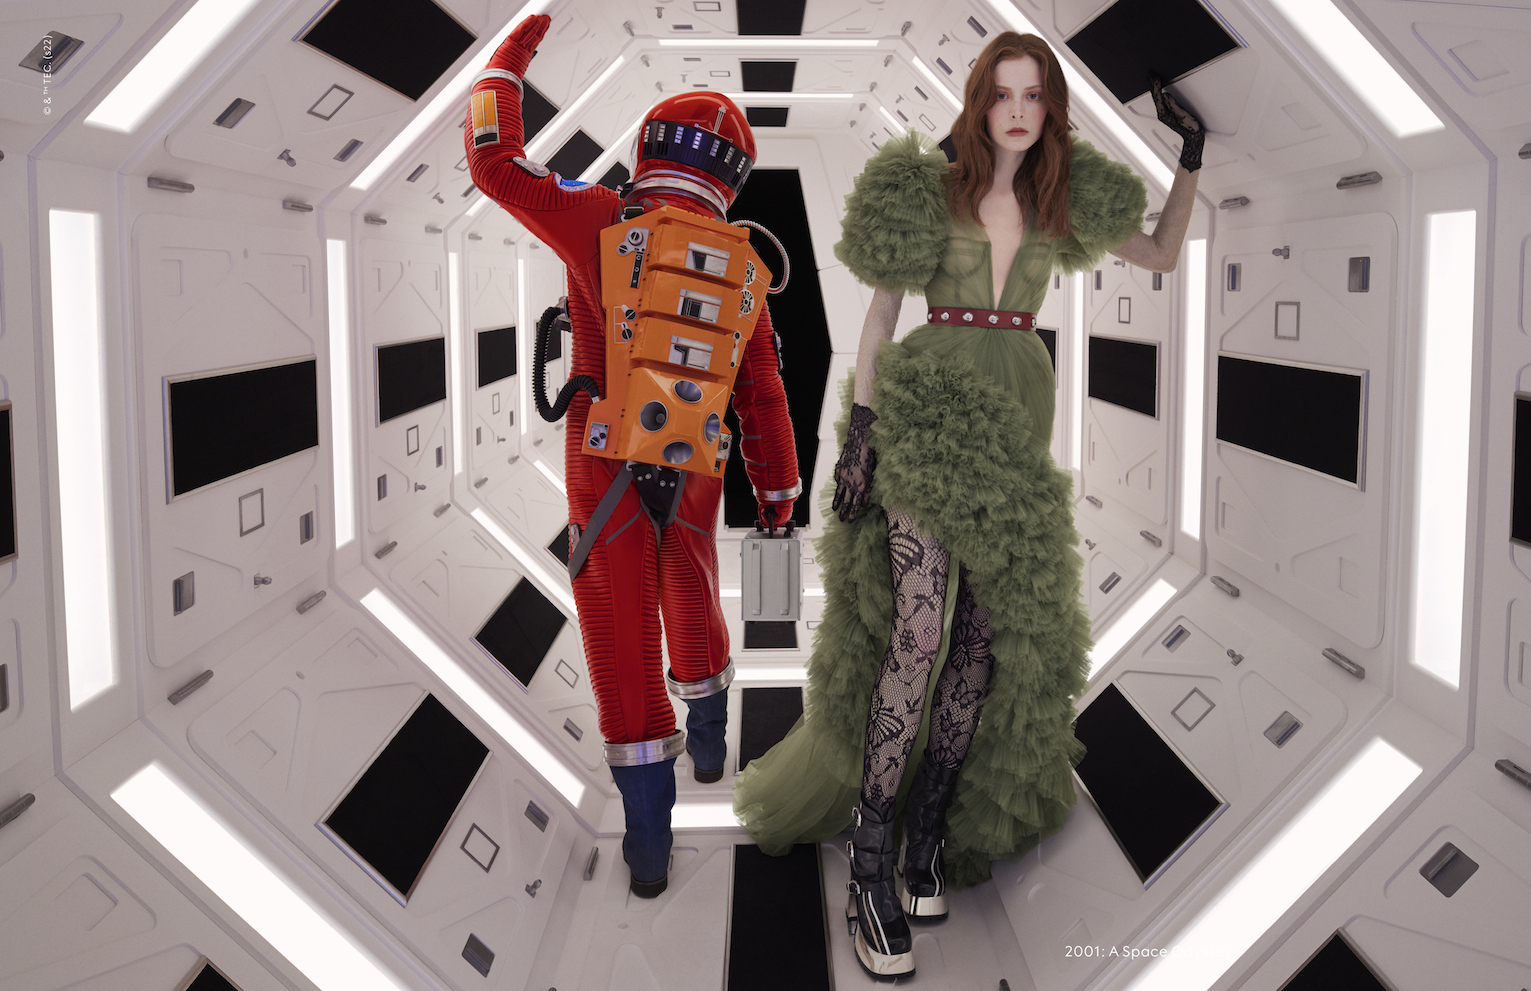 Kubrick in passerella. La nuova campagna Exquisite by Gucci